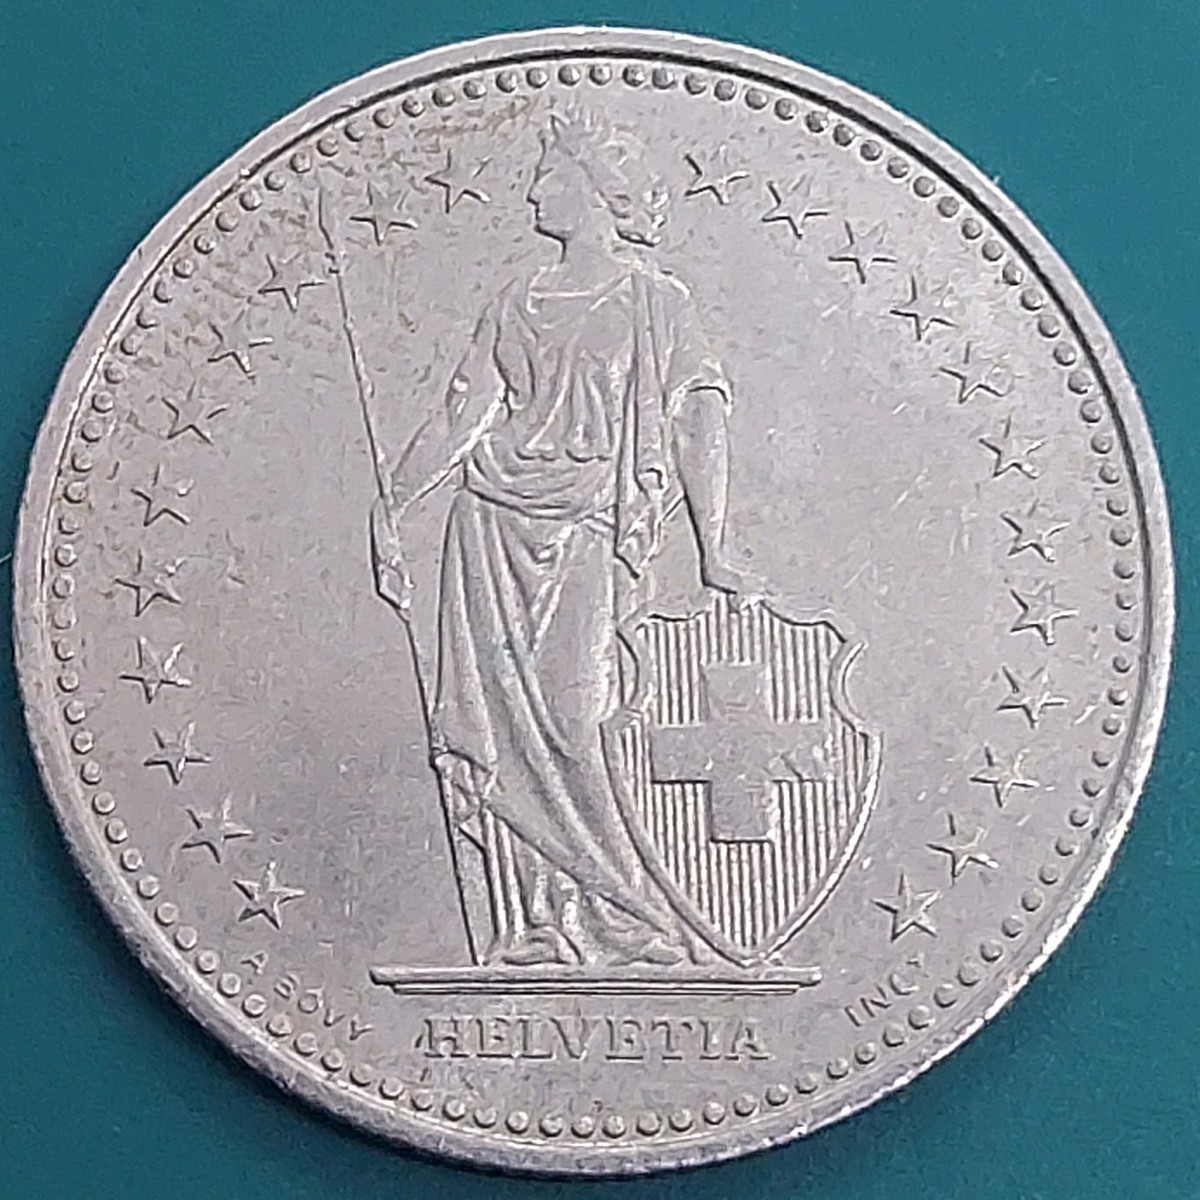 【60119】スイス 1/2フラン おまとめ3点 1968年 1970年 1993年 スイス硬貨 コイン コレクション品の画像10